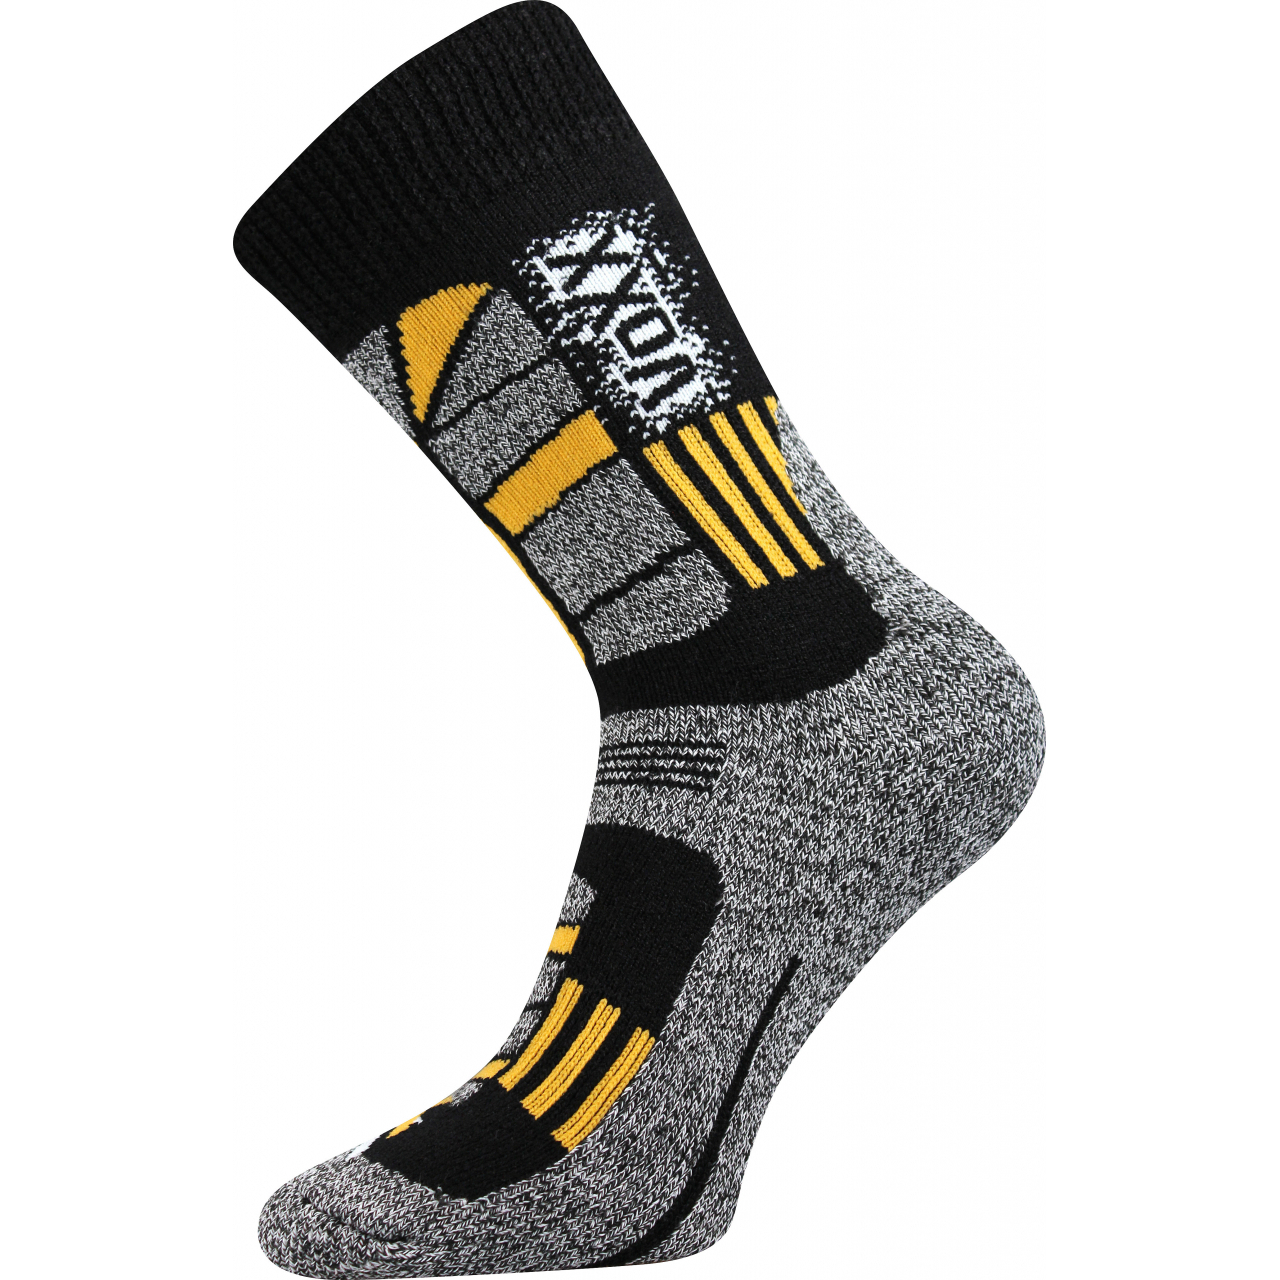 Ponožky unisex termo Voxx Traction I - černé-žluté, 47-50